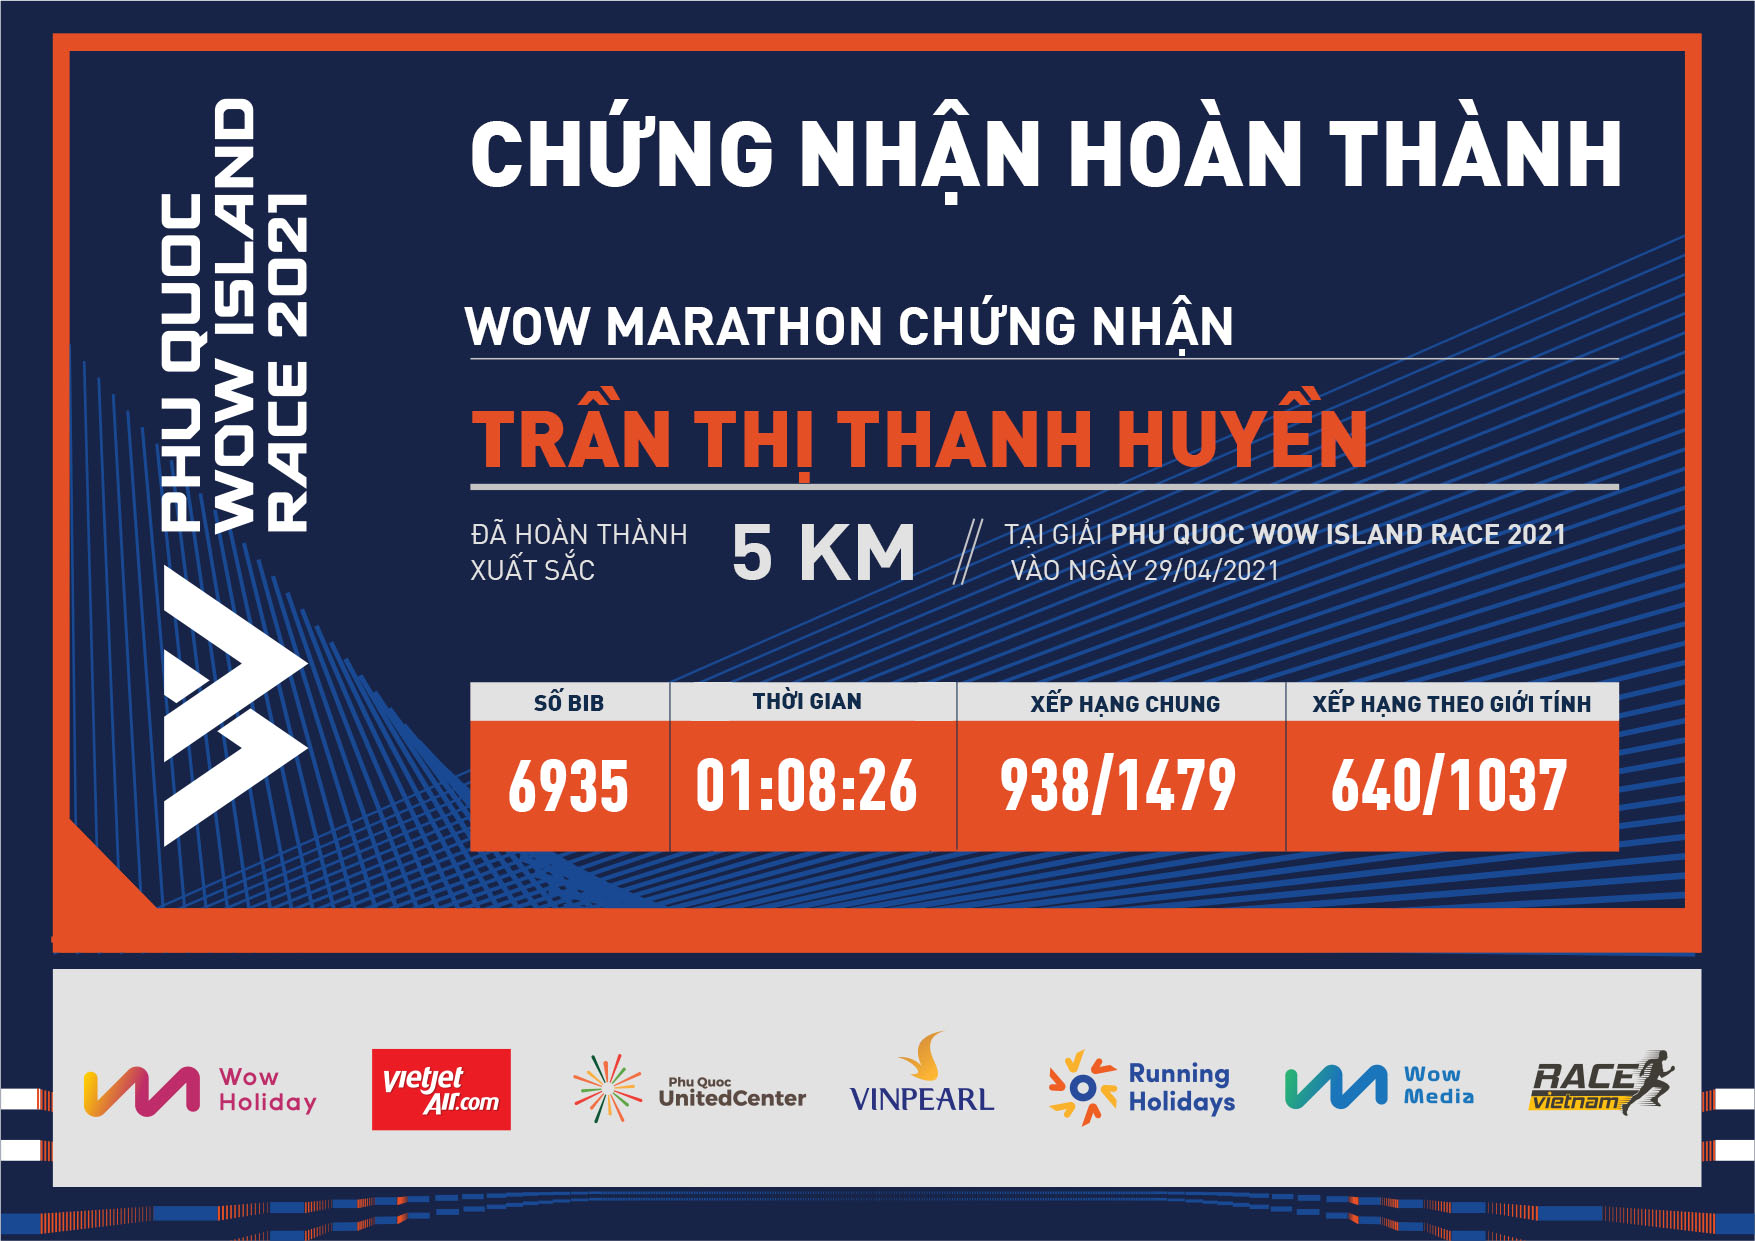 6935 - Trần Thị Thanh Huyền